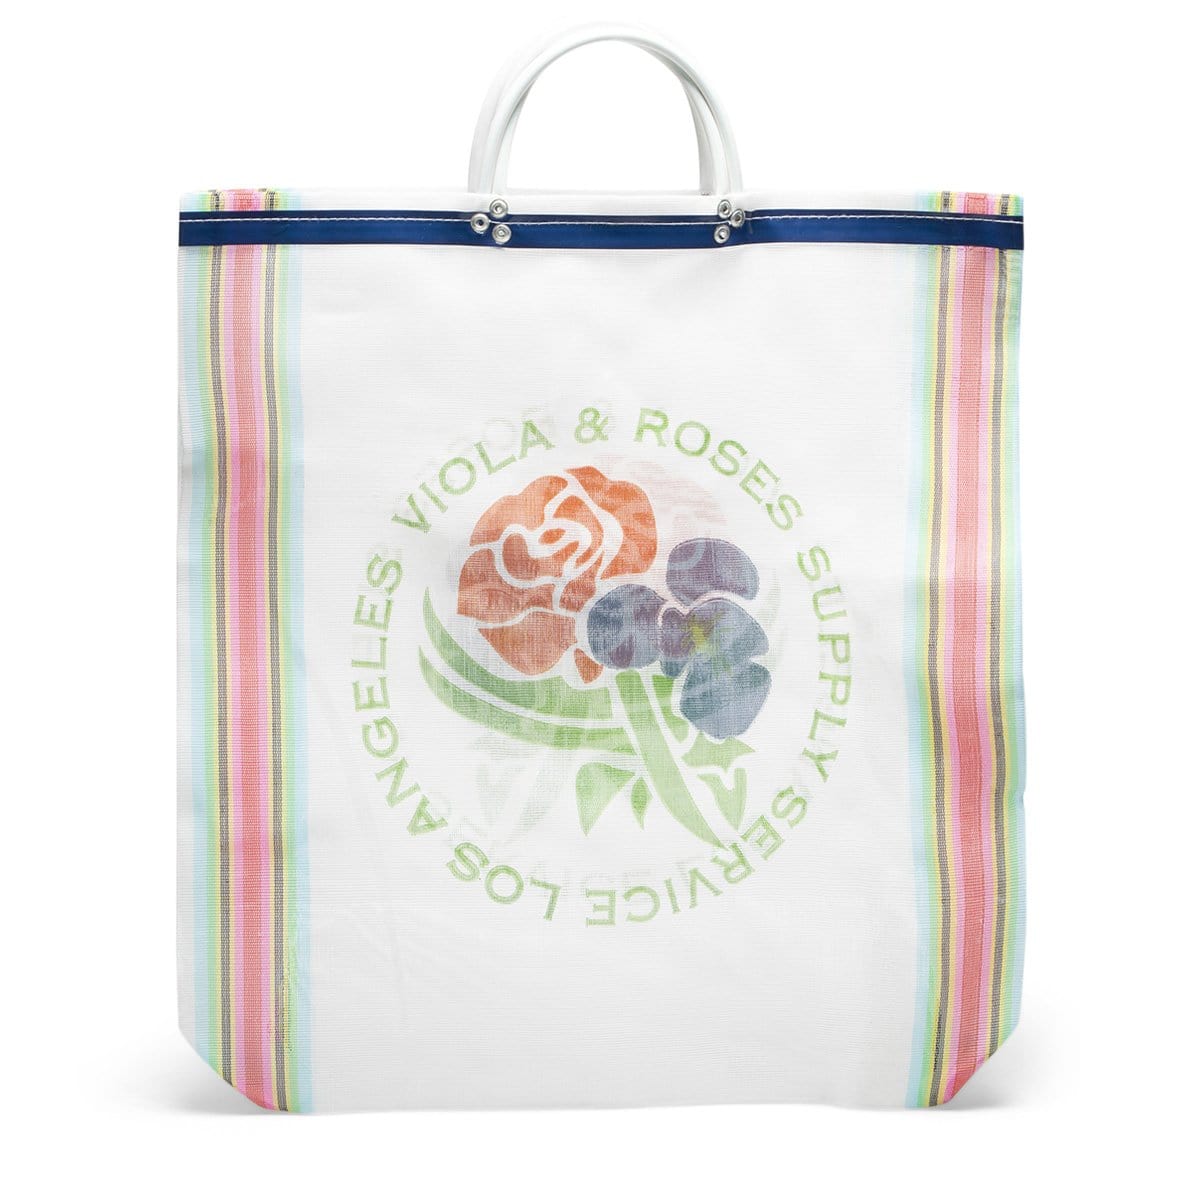 Viola and Roses Bags & Accessories MULTI / OS VIOLA AND ROSES BODEGA BAG